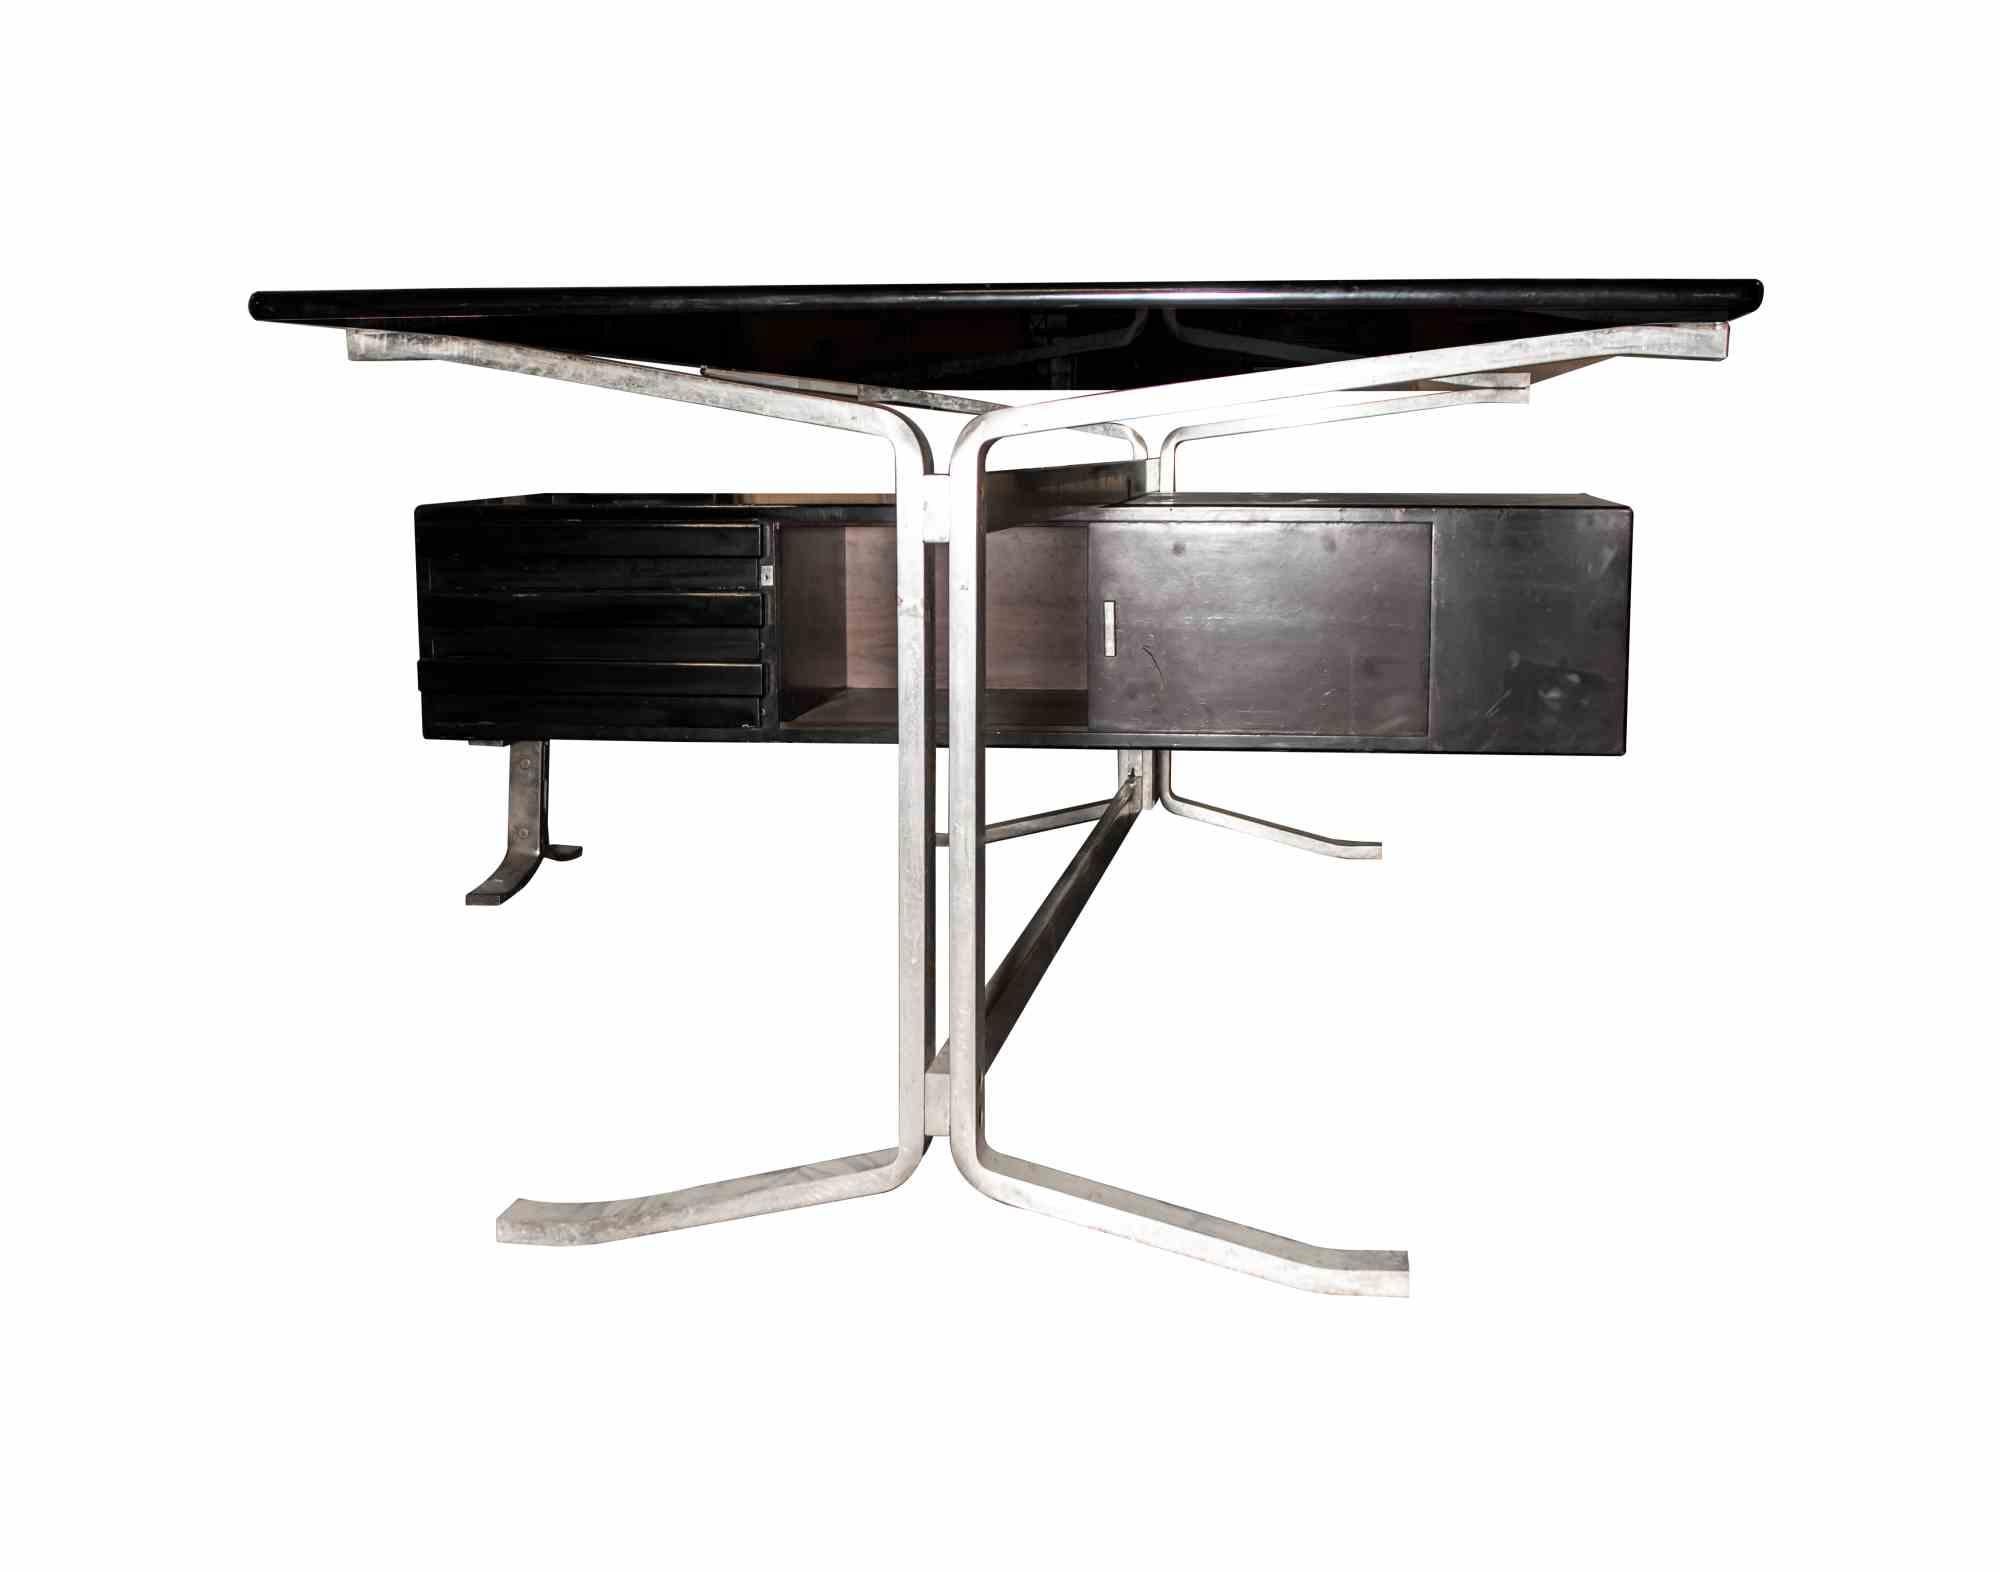 Le bureau d'angle vintage est un meuble design original réalisé dans les années 1965 environ par Gianni Moscatelli pour Formanova.

Bois laqué noir et pieds en métal chromé brossé. Top en verre.

Dimensions du bureau d'angle : 56 x 62 x 62